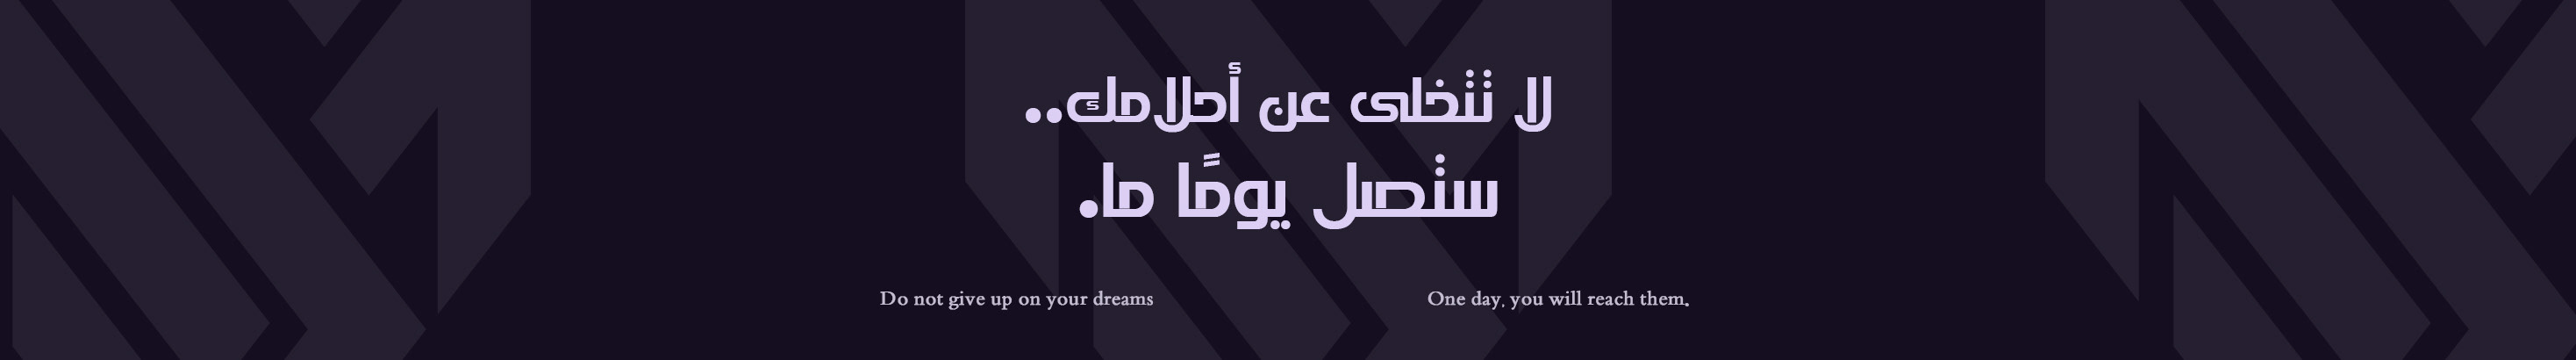 Mohamed Saber's profile banner